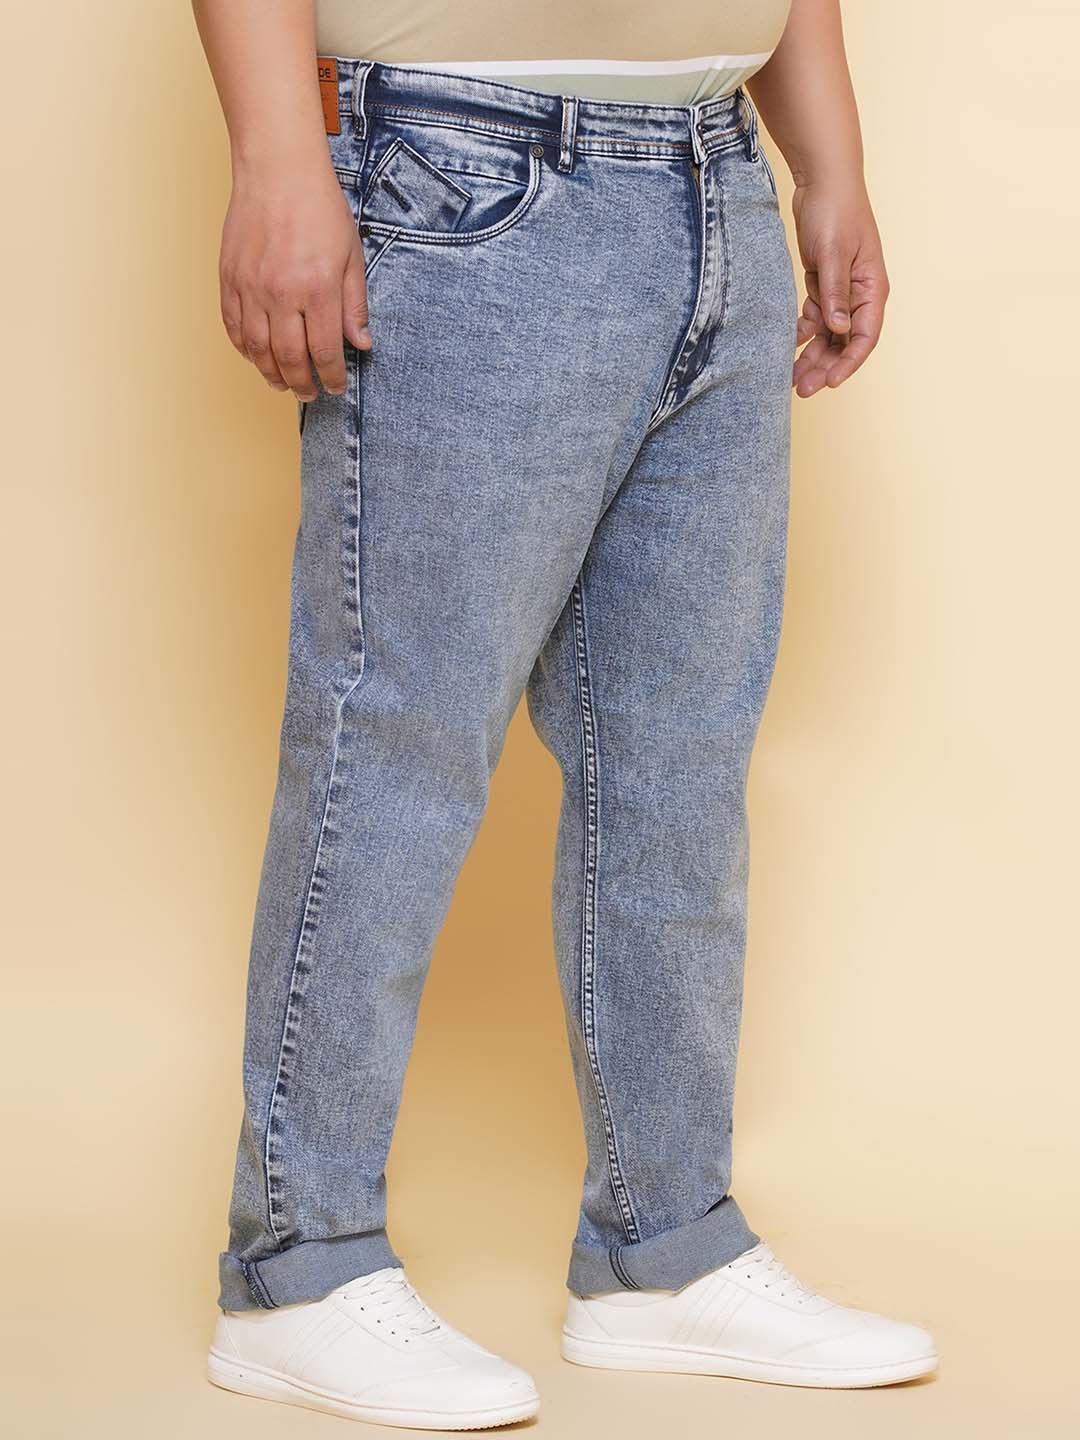 bottomwear/jeans/JPJ27115/jpj27115-4.jpg